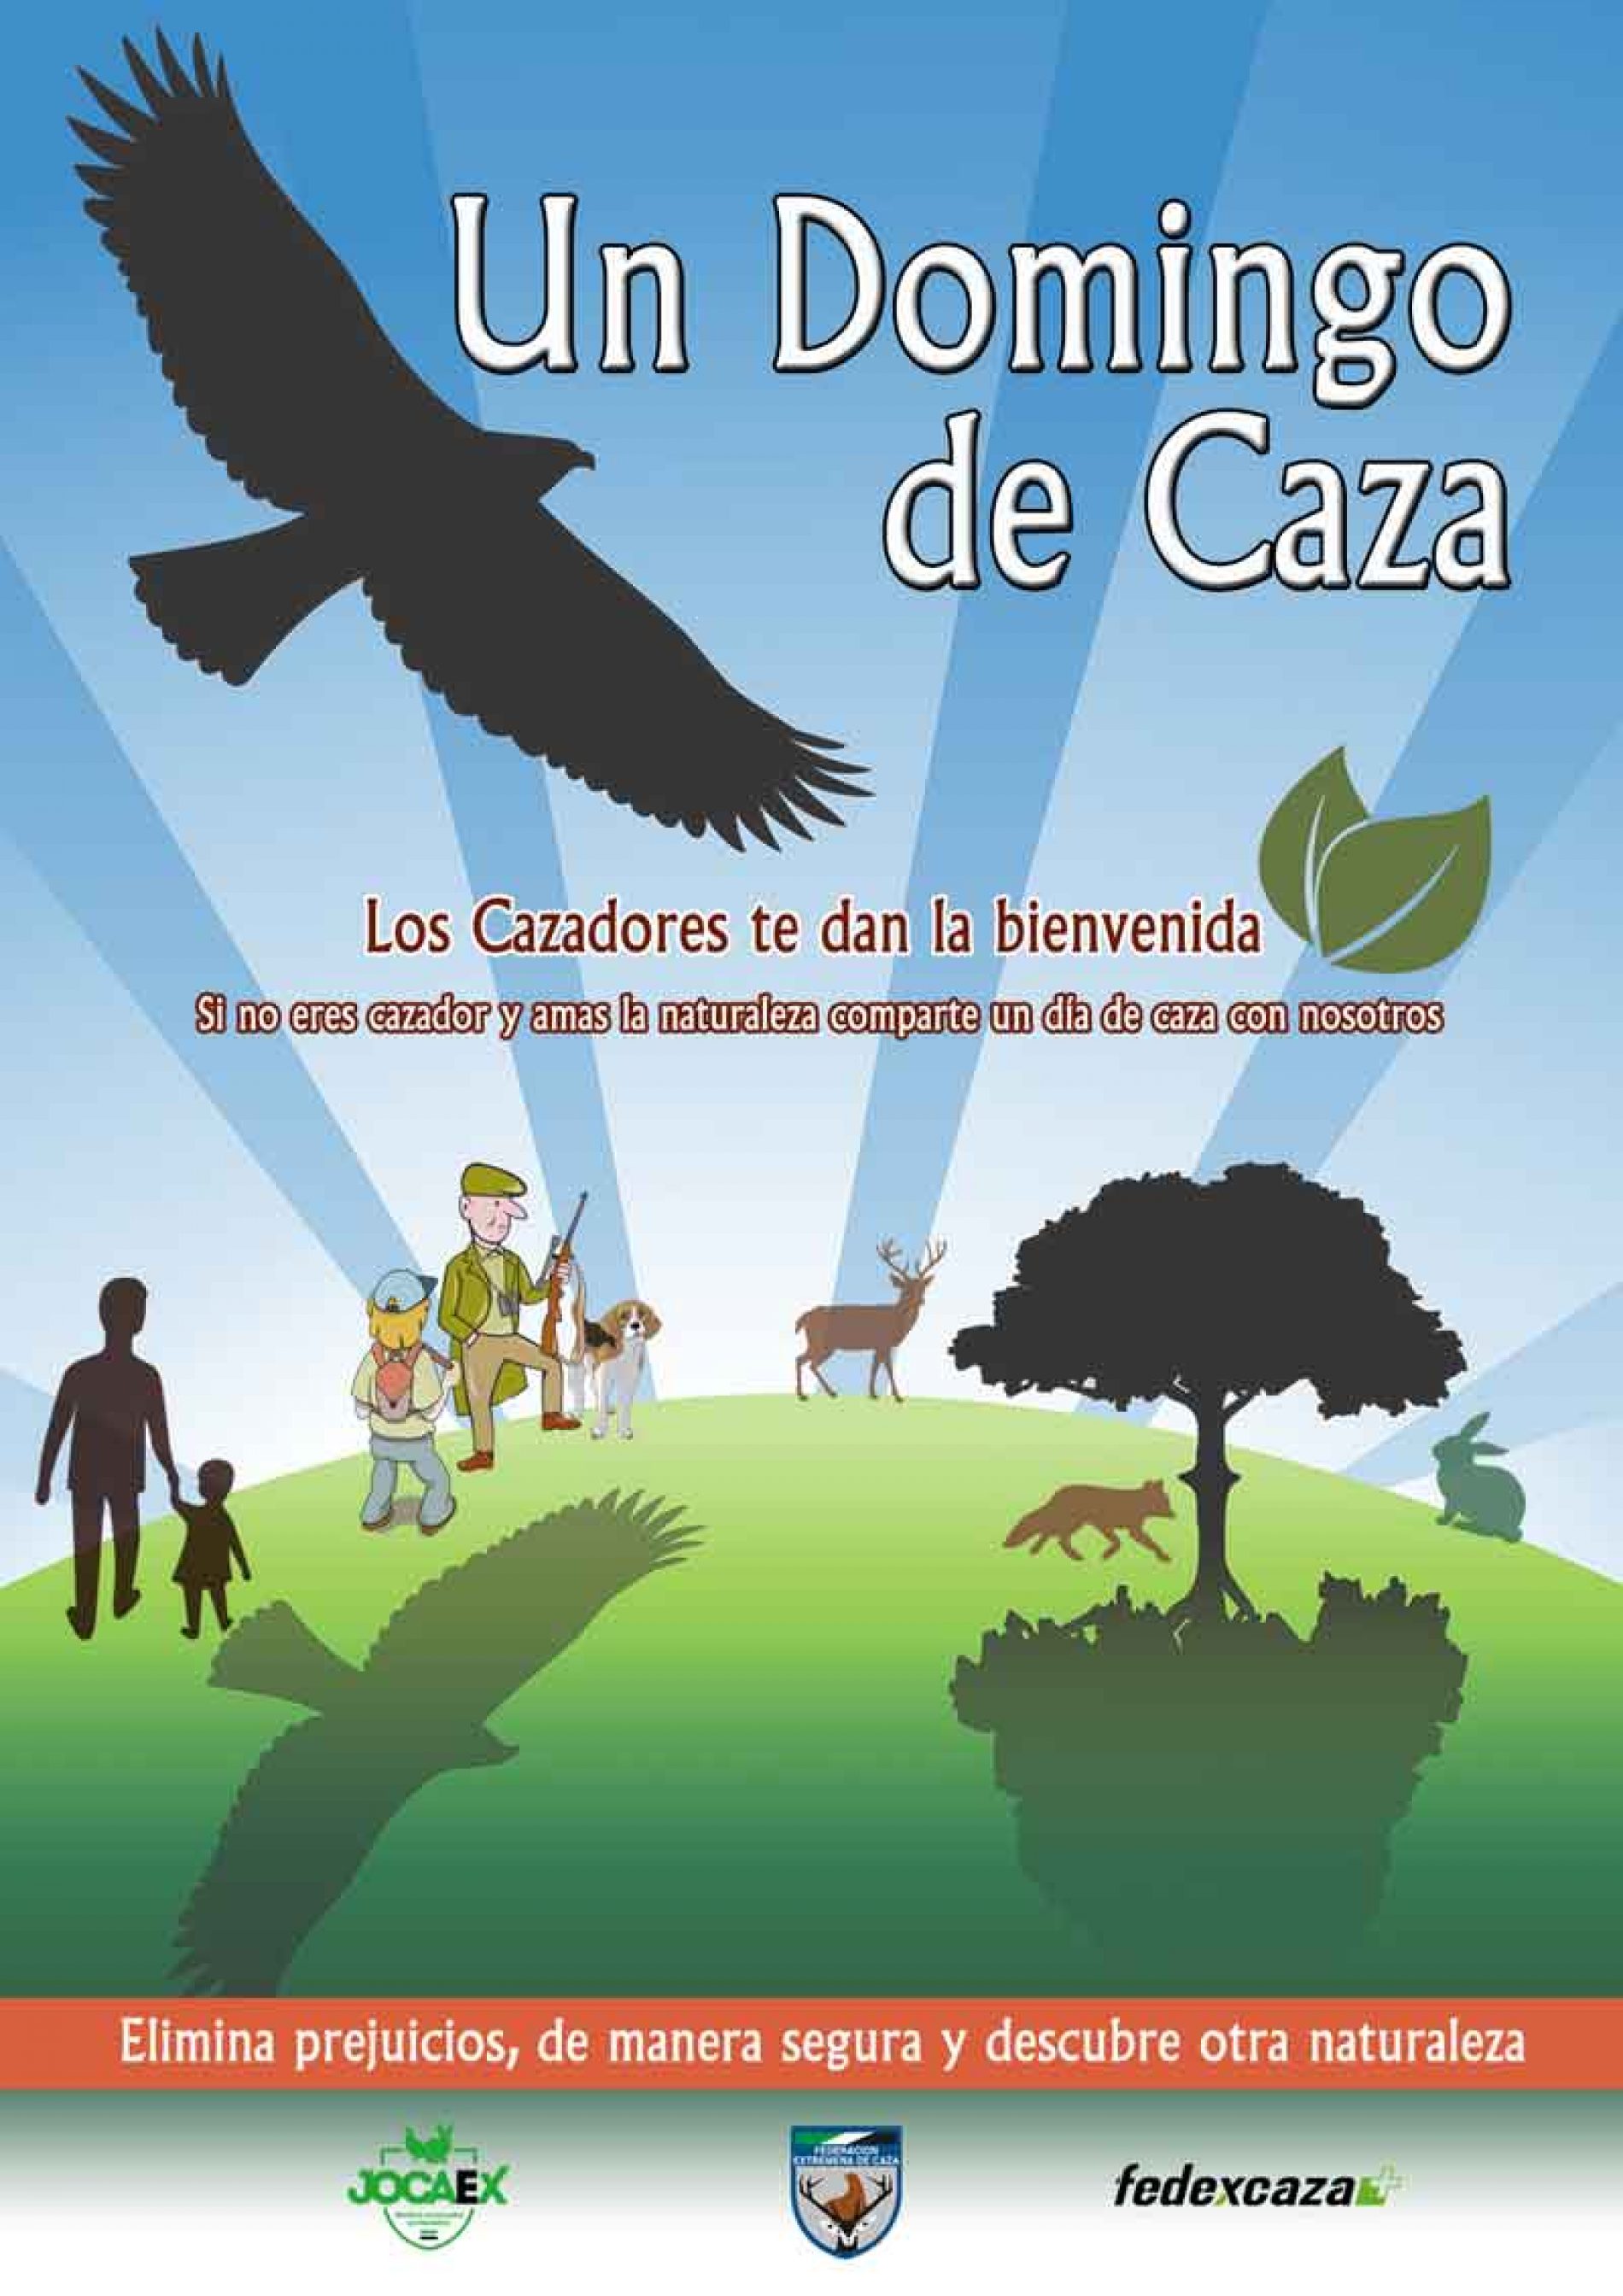 FEDEXCAZA lanza por 2º año el proyecto “Un domingo de caza”